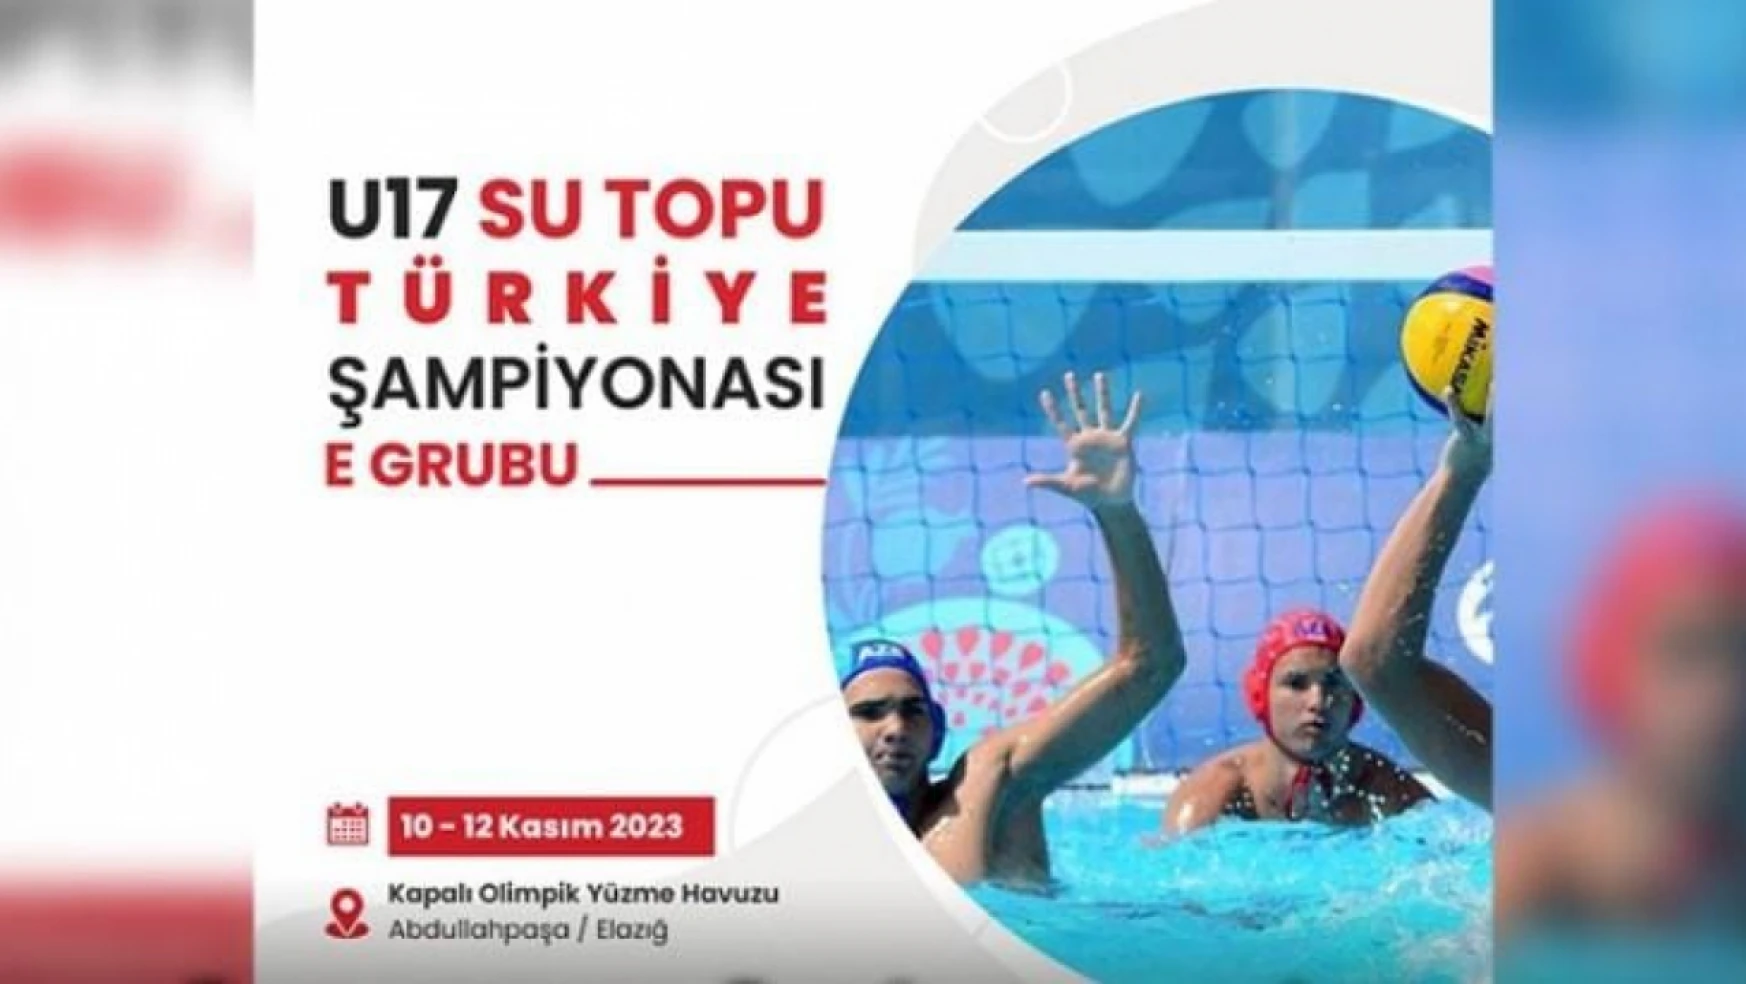 Elazığ, Su Topu Türkiye şampiyonası'na ev sahipliği yapacak